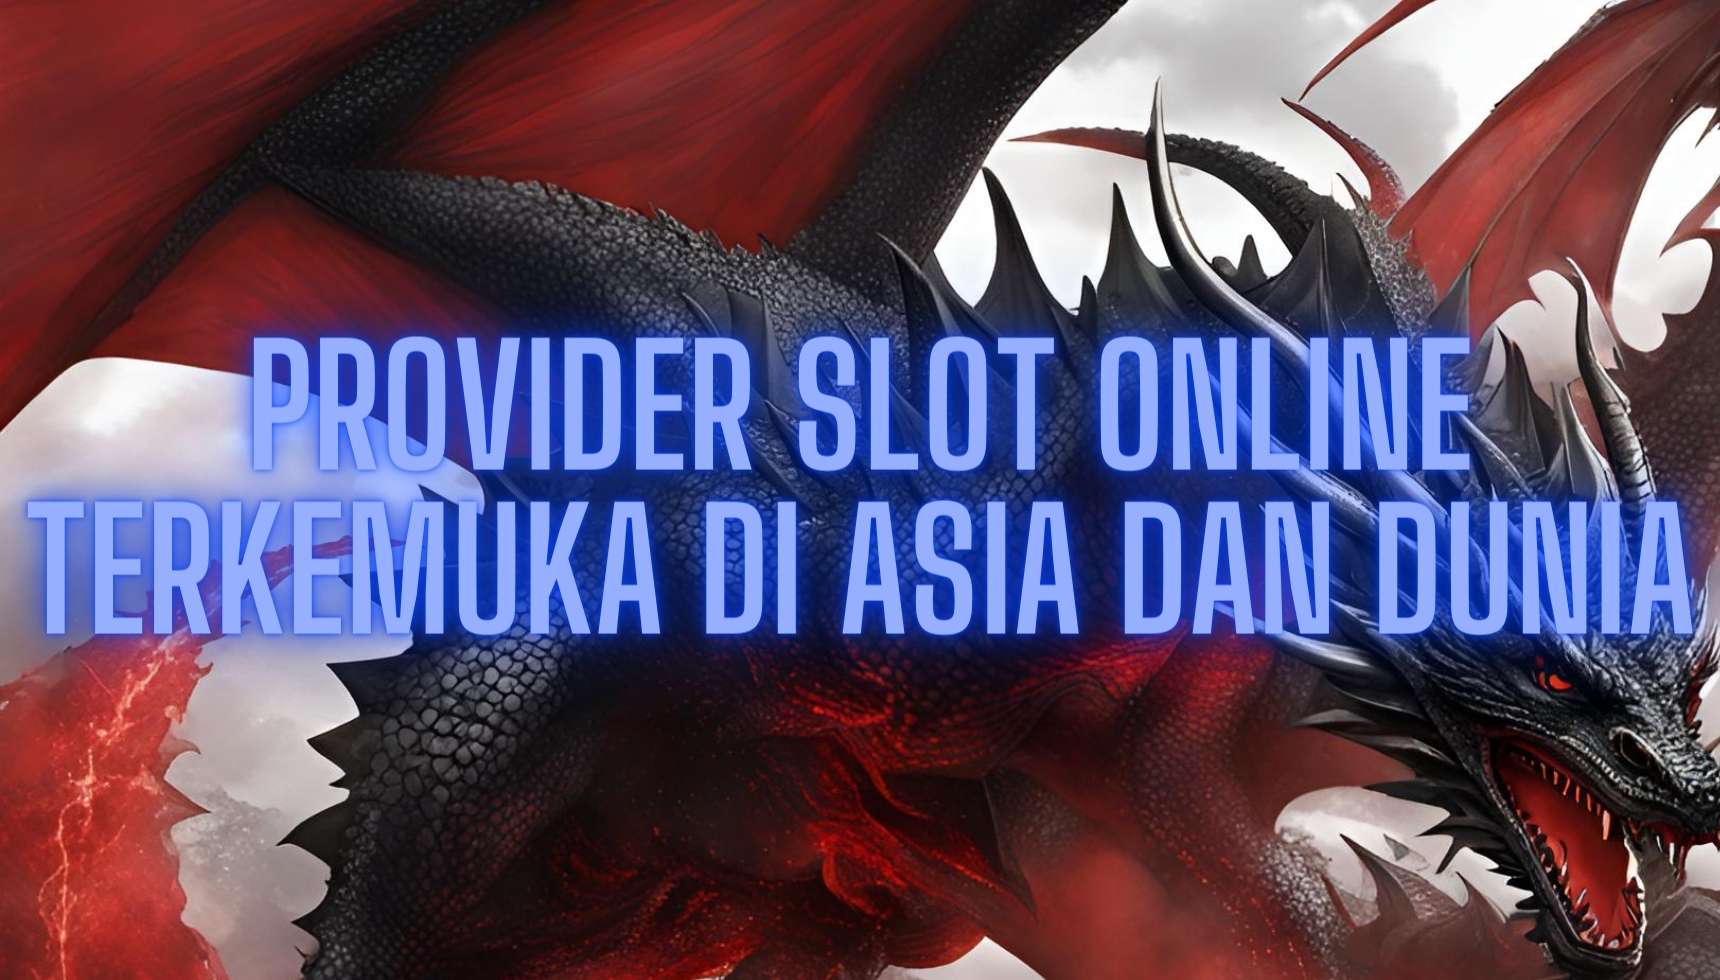 Provider Slot Online Terkemuka di Asia dan Dunia